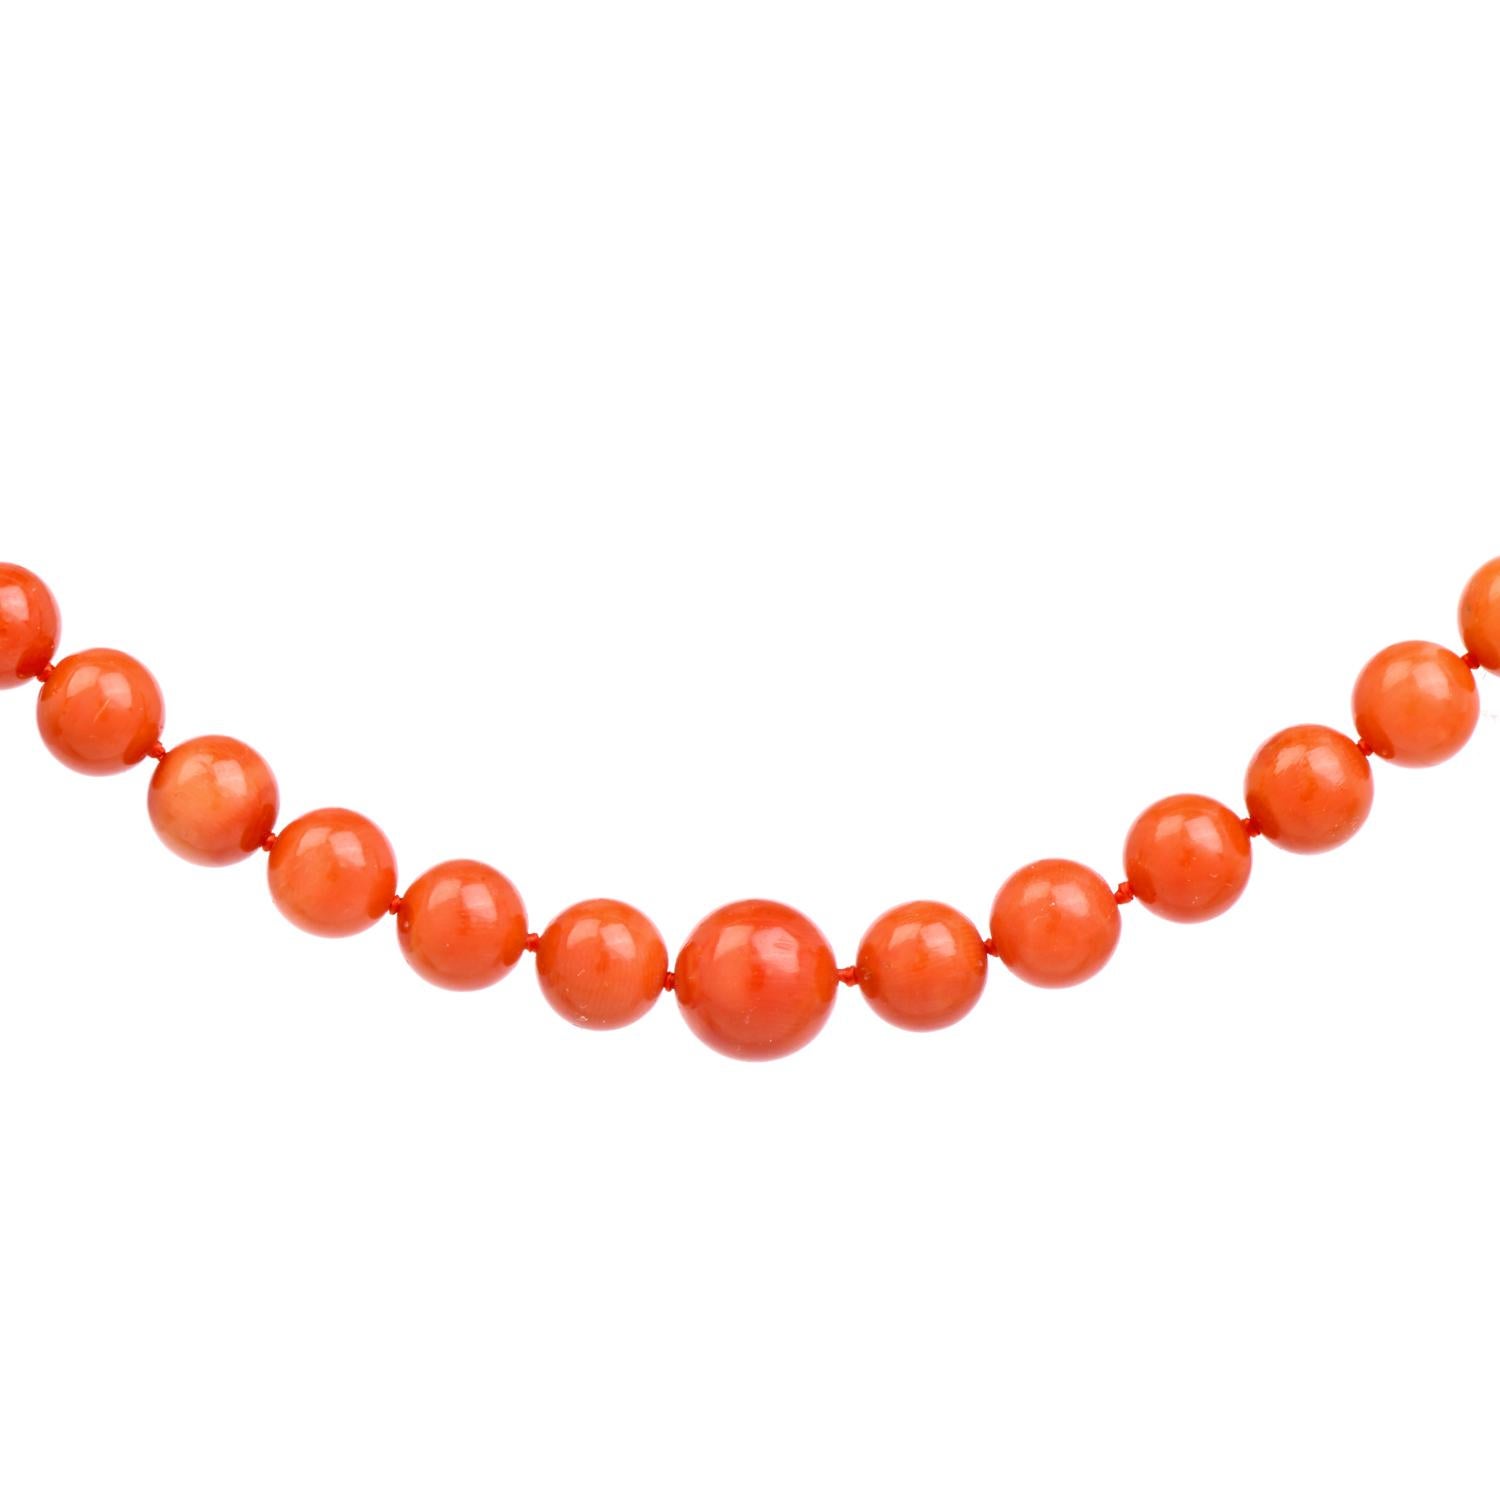 Ce magnifique collier de 68 perles en corail rouge naturel s'étend sur 22 pouces autour du cou ou peut être enroulé autour du poignet pour un port plus souple.

Ces perles de corail Nature mesurent de 10 mm à 8 mm et sont fixées par un fermoir en or